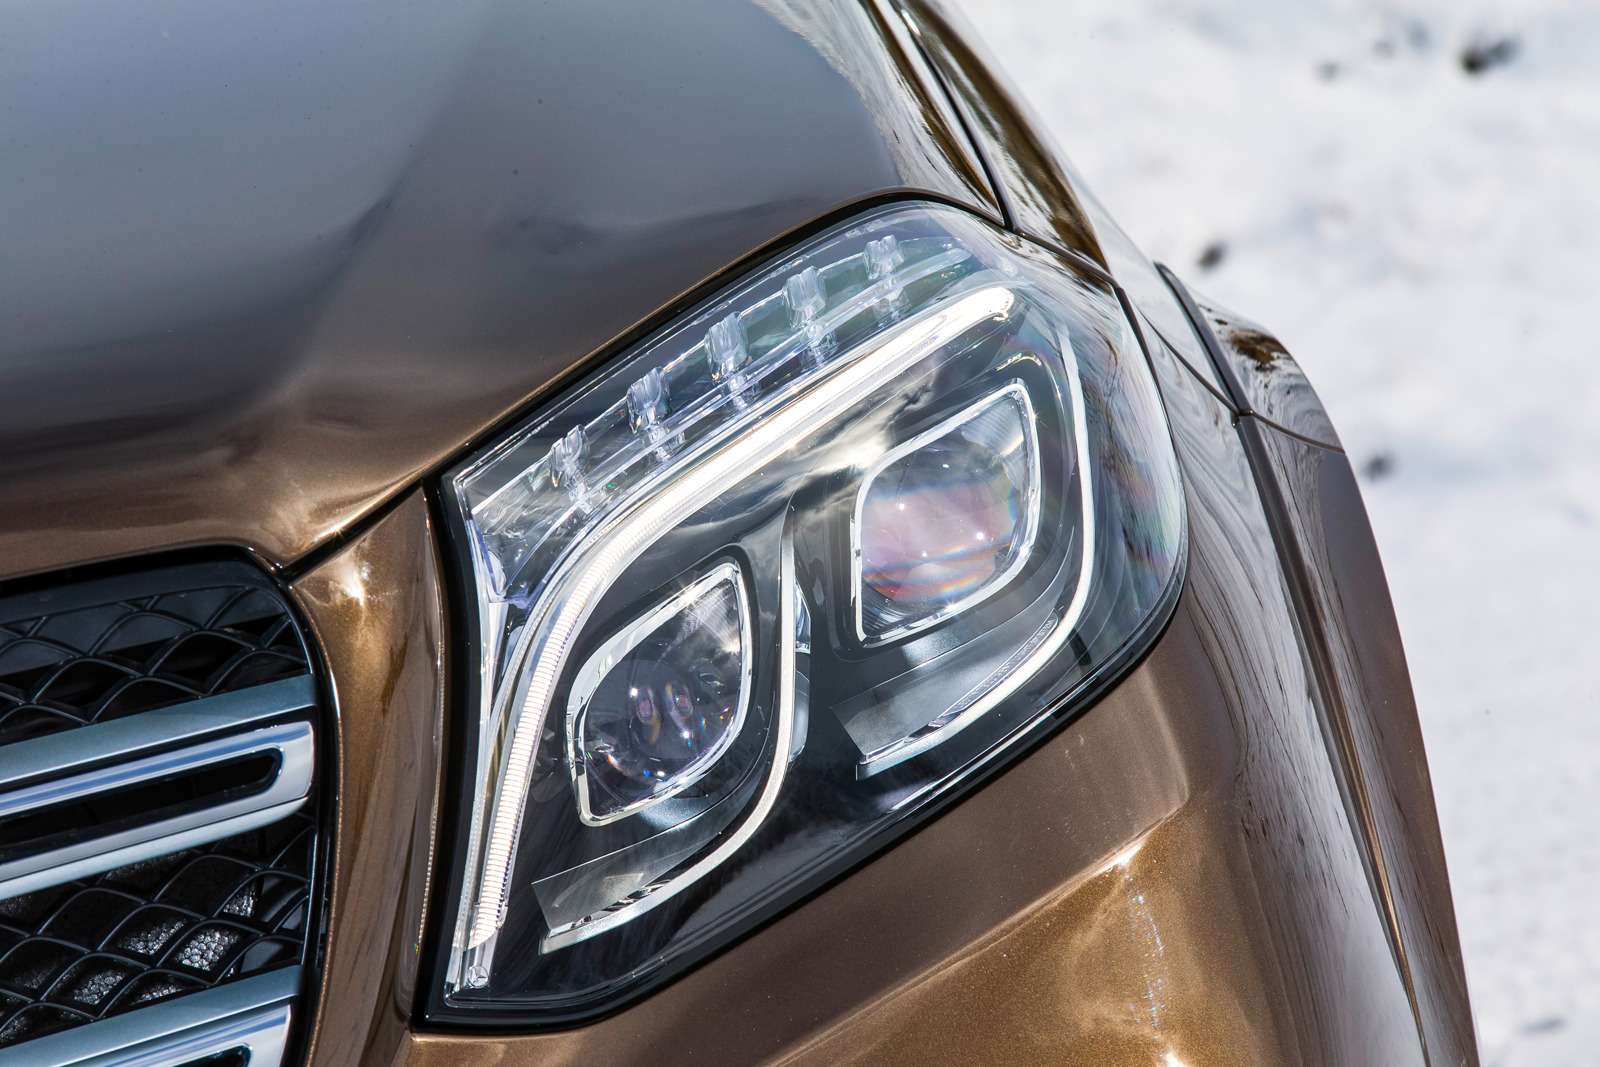 Mercedes-Benz GLS. Светодиодные матричные фары – самое ценное приобретение обновленной машины. Светят отменно и вовремя изменяют пучки света, не ослепляя встречных водителей.